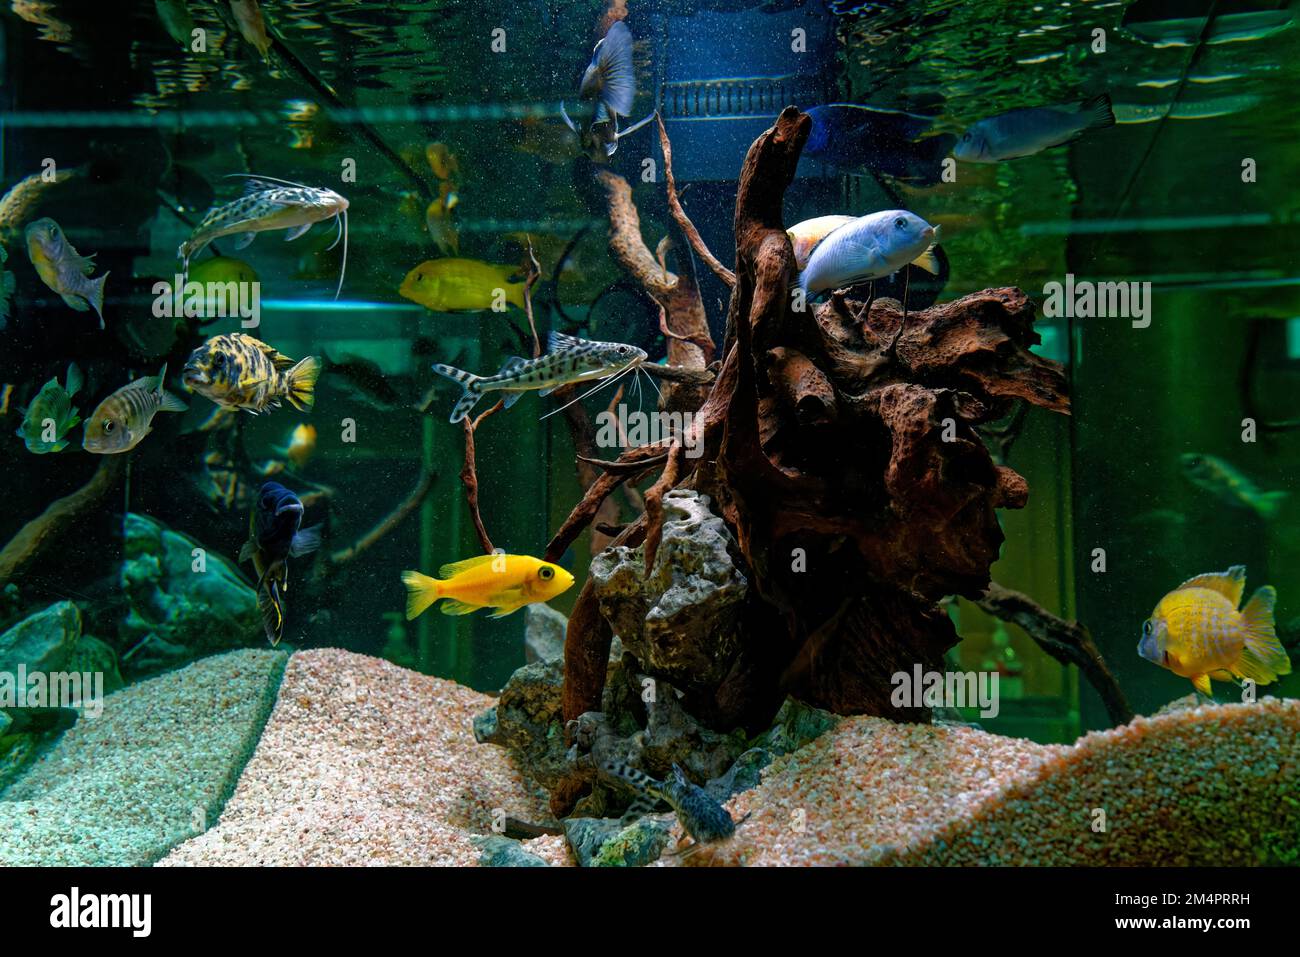 Exotic fish in an aquarium Stock Photo